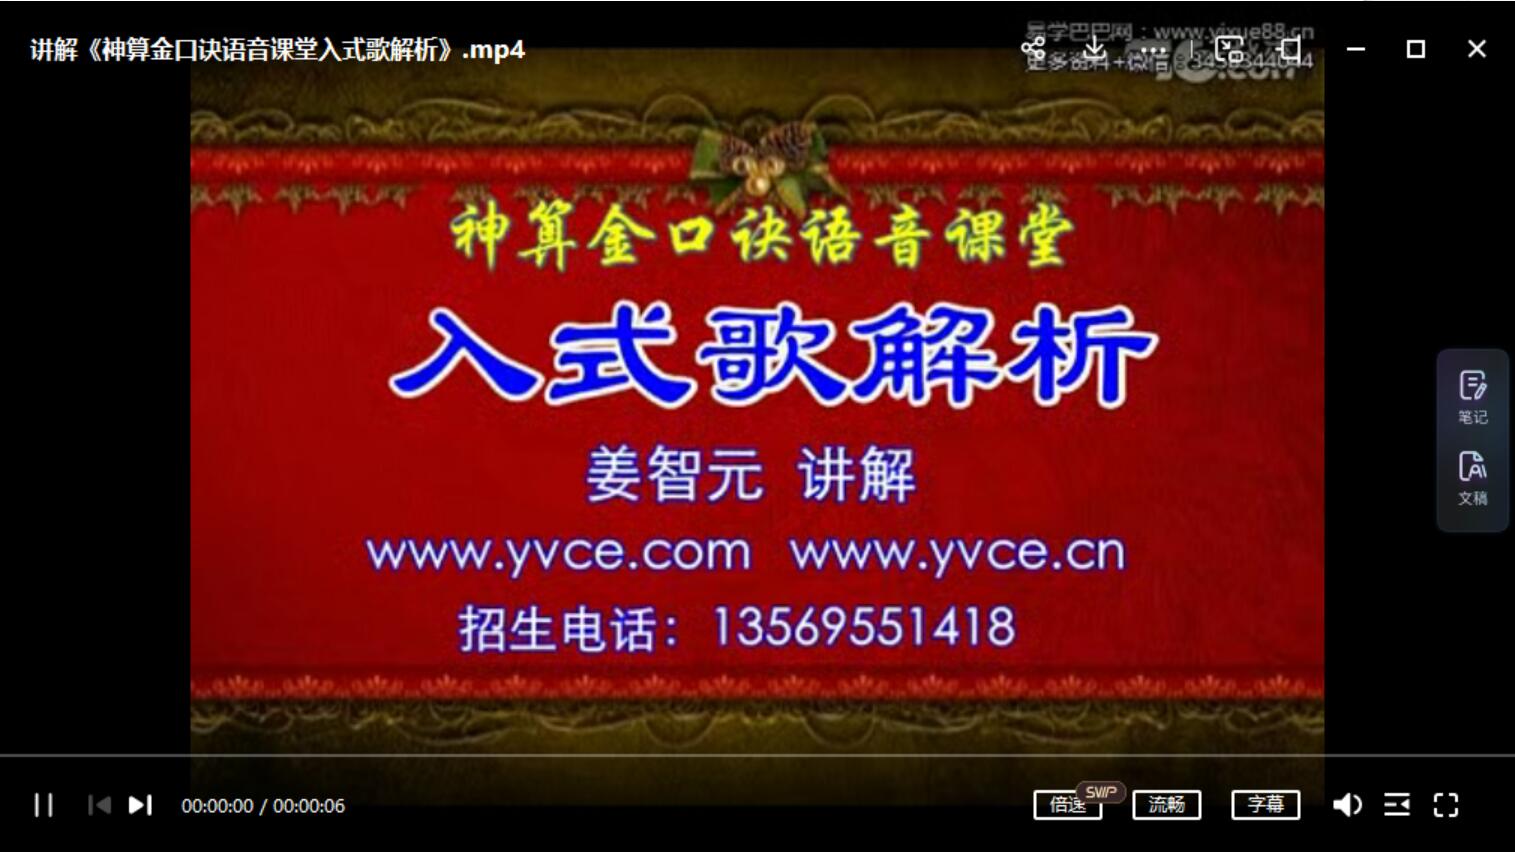 姜智元-《神算金口诀语音课堂入式歌解析》视频1集